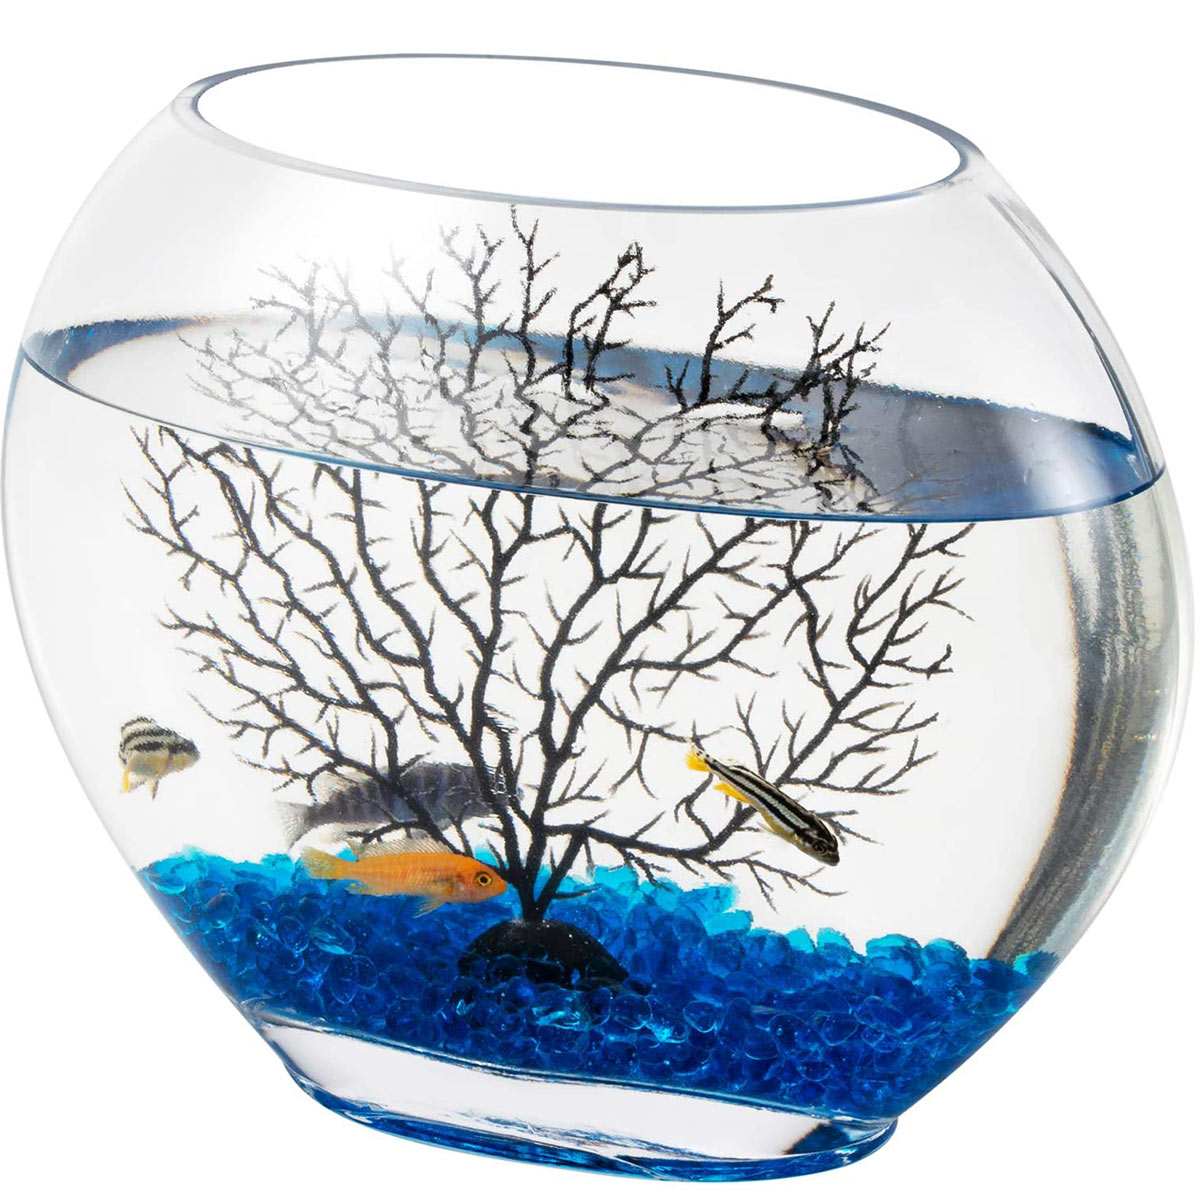 https://www.hygger-online.com/wp-content/uploads/2021/06/Hygger-Mini-Glass-Oblate-Fish-Bowl-1-1.jpg